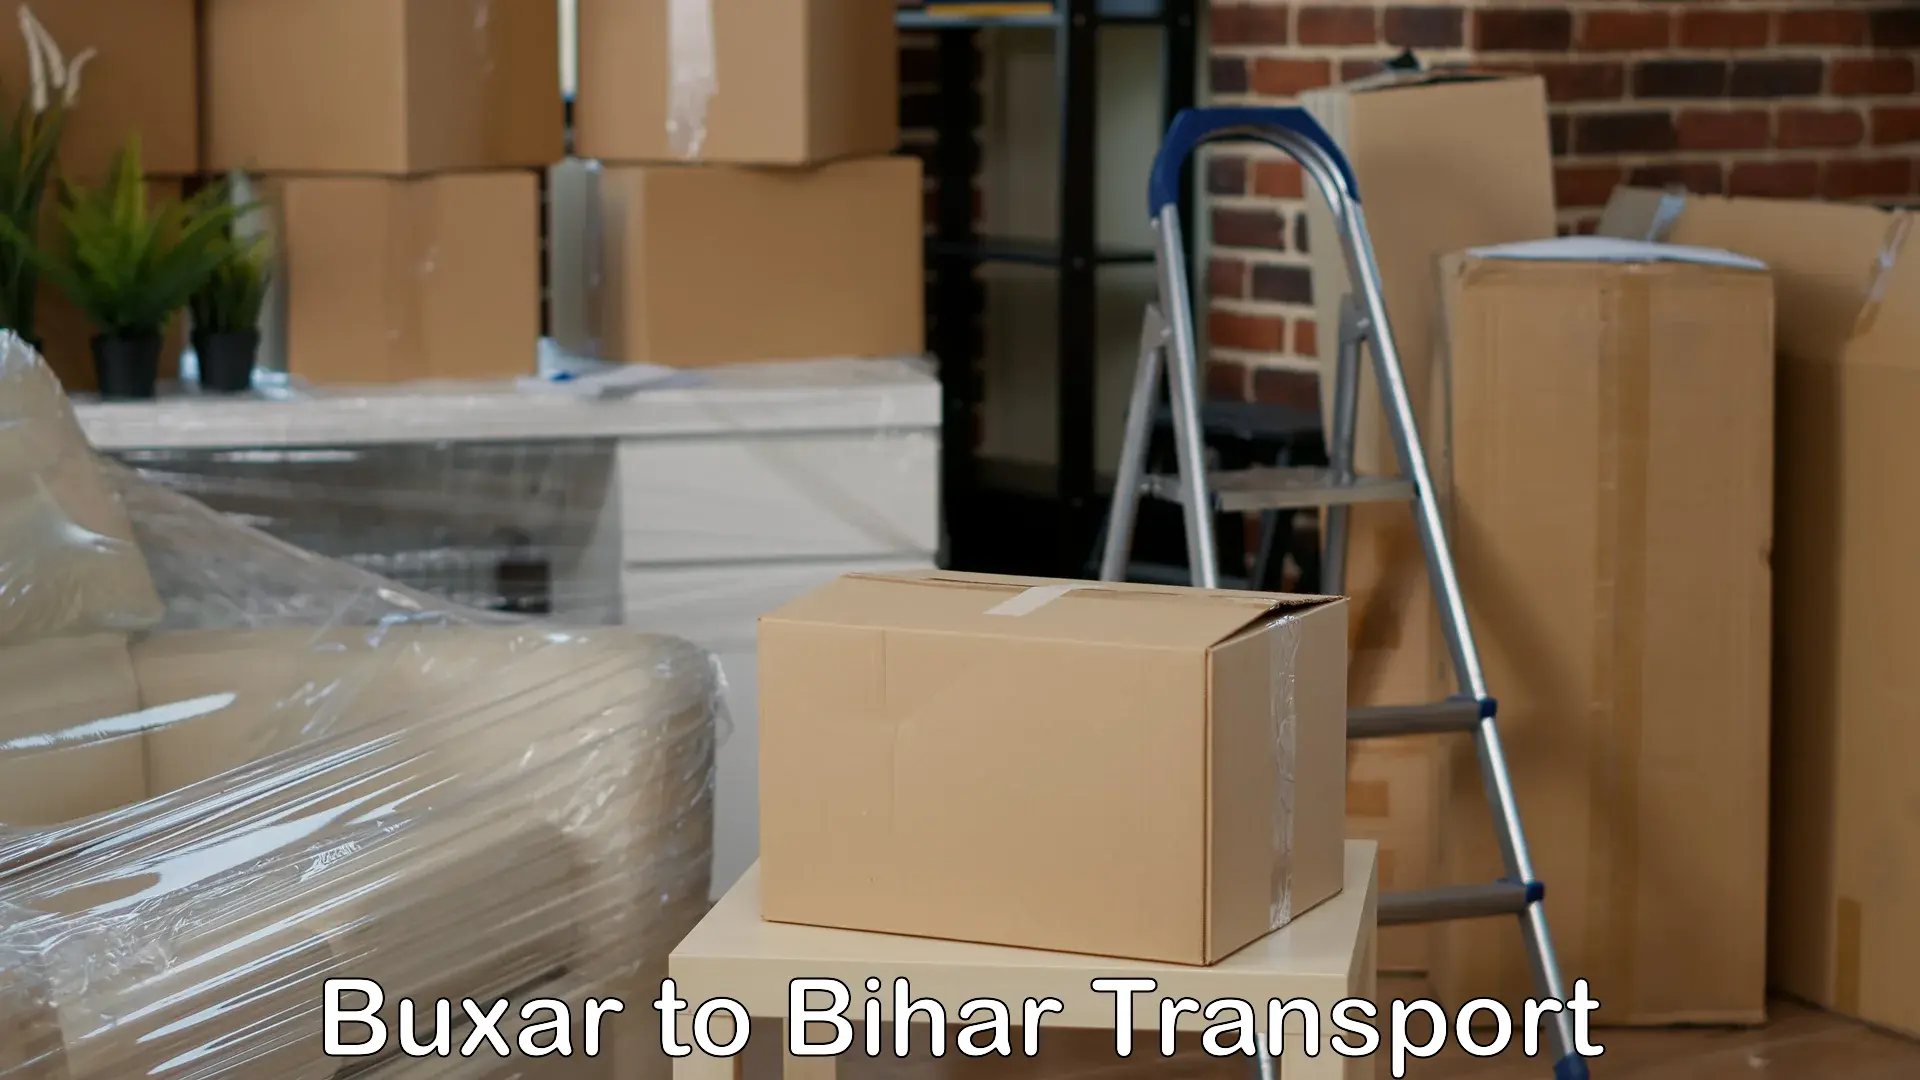 Parcel transport services Buxar to Banka